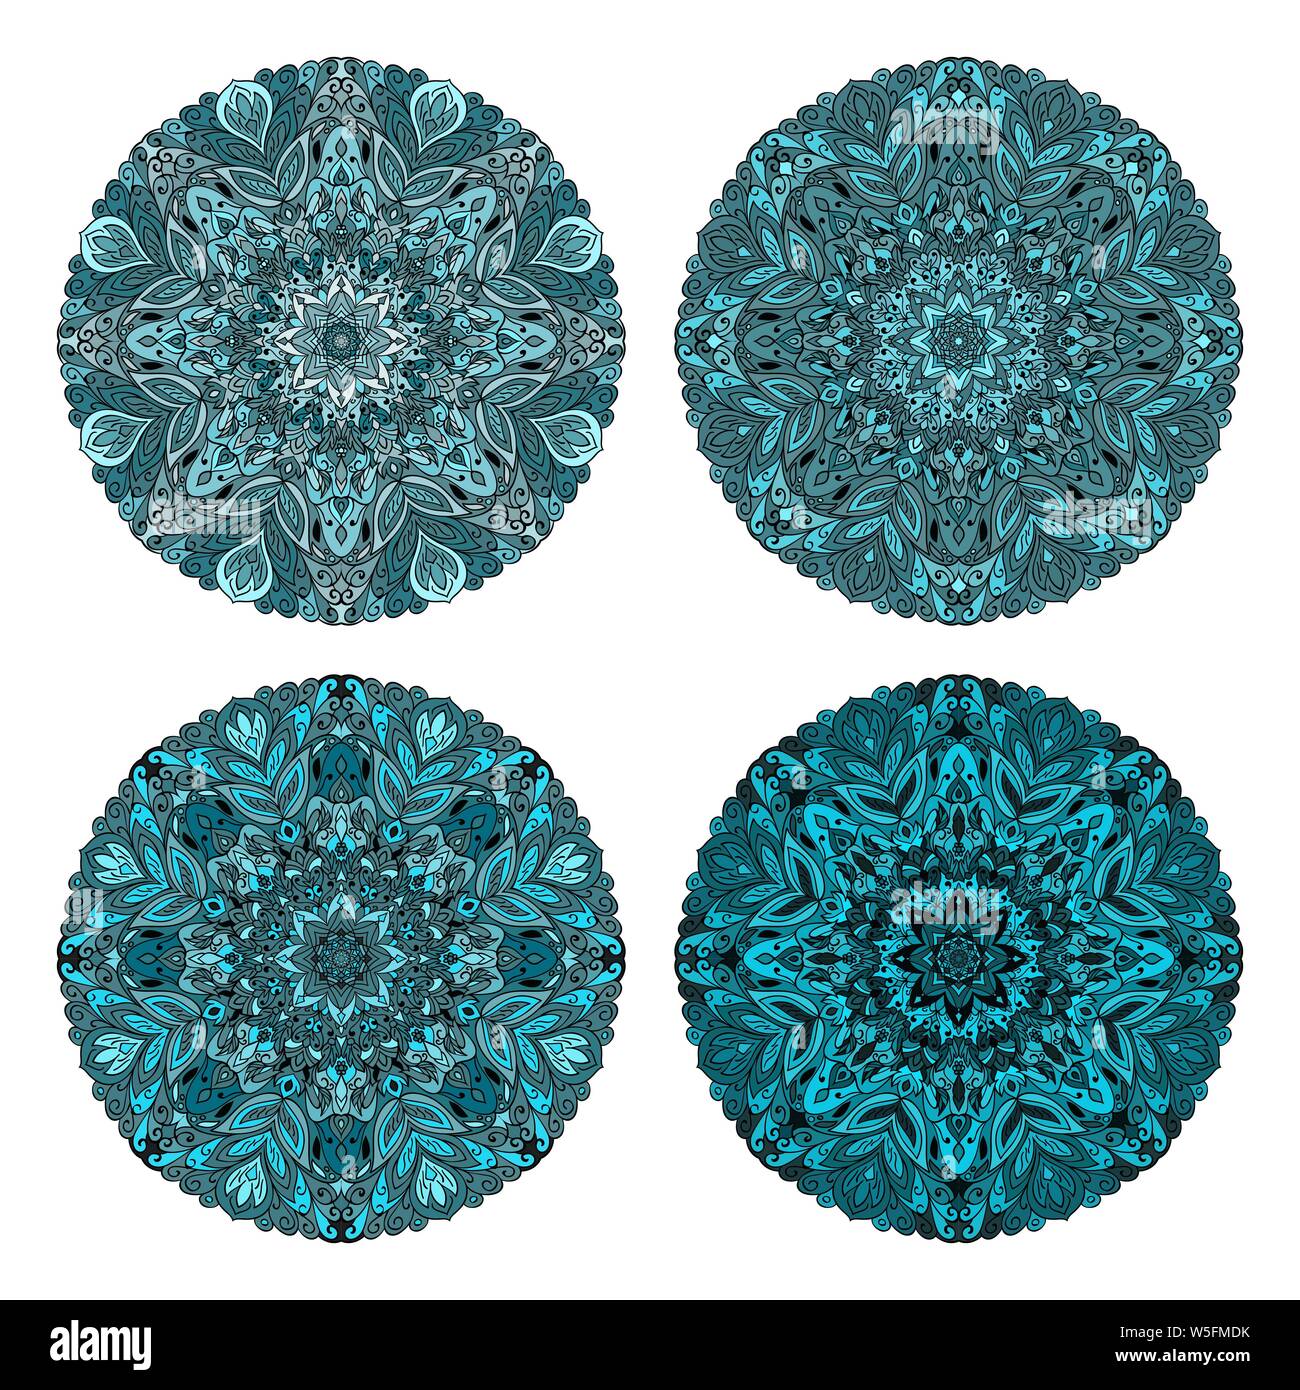 Der kreisförmige Muster. Farbige Mandalas. Runde geometrische Ornamente. Vektor Rundschreiben geometrische Verzierung. Runde Muster. Stock Vektor